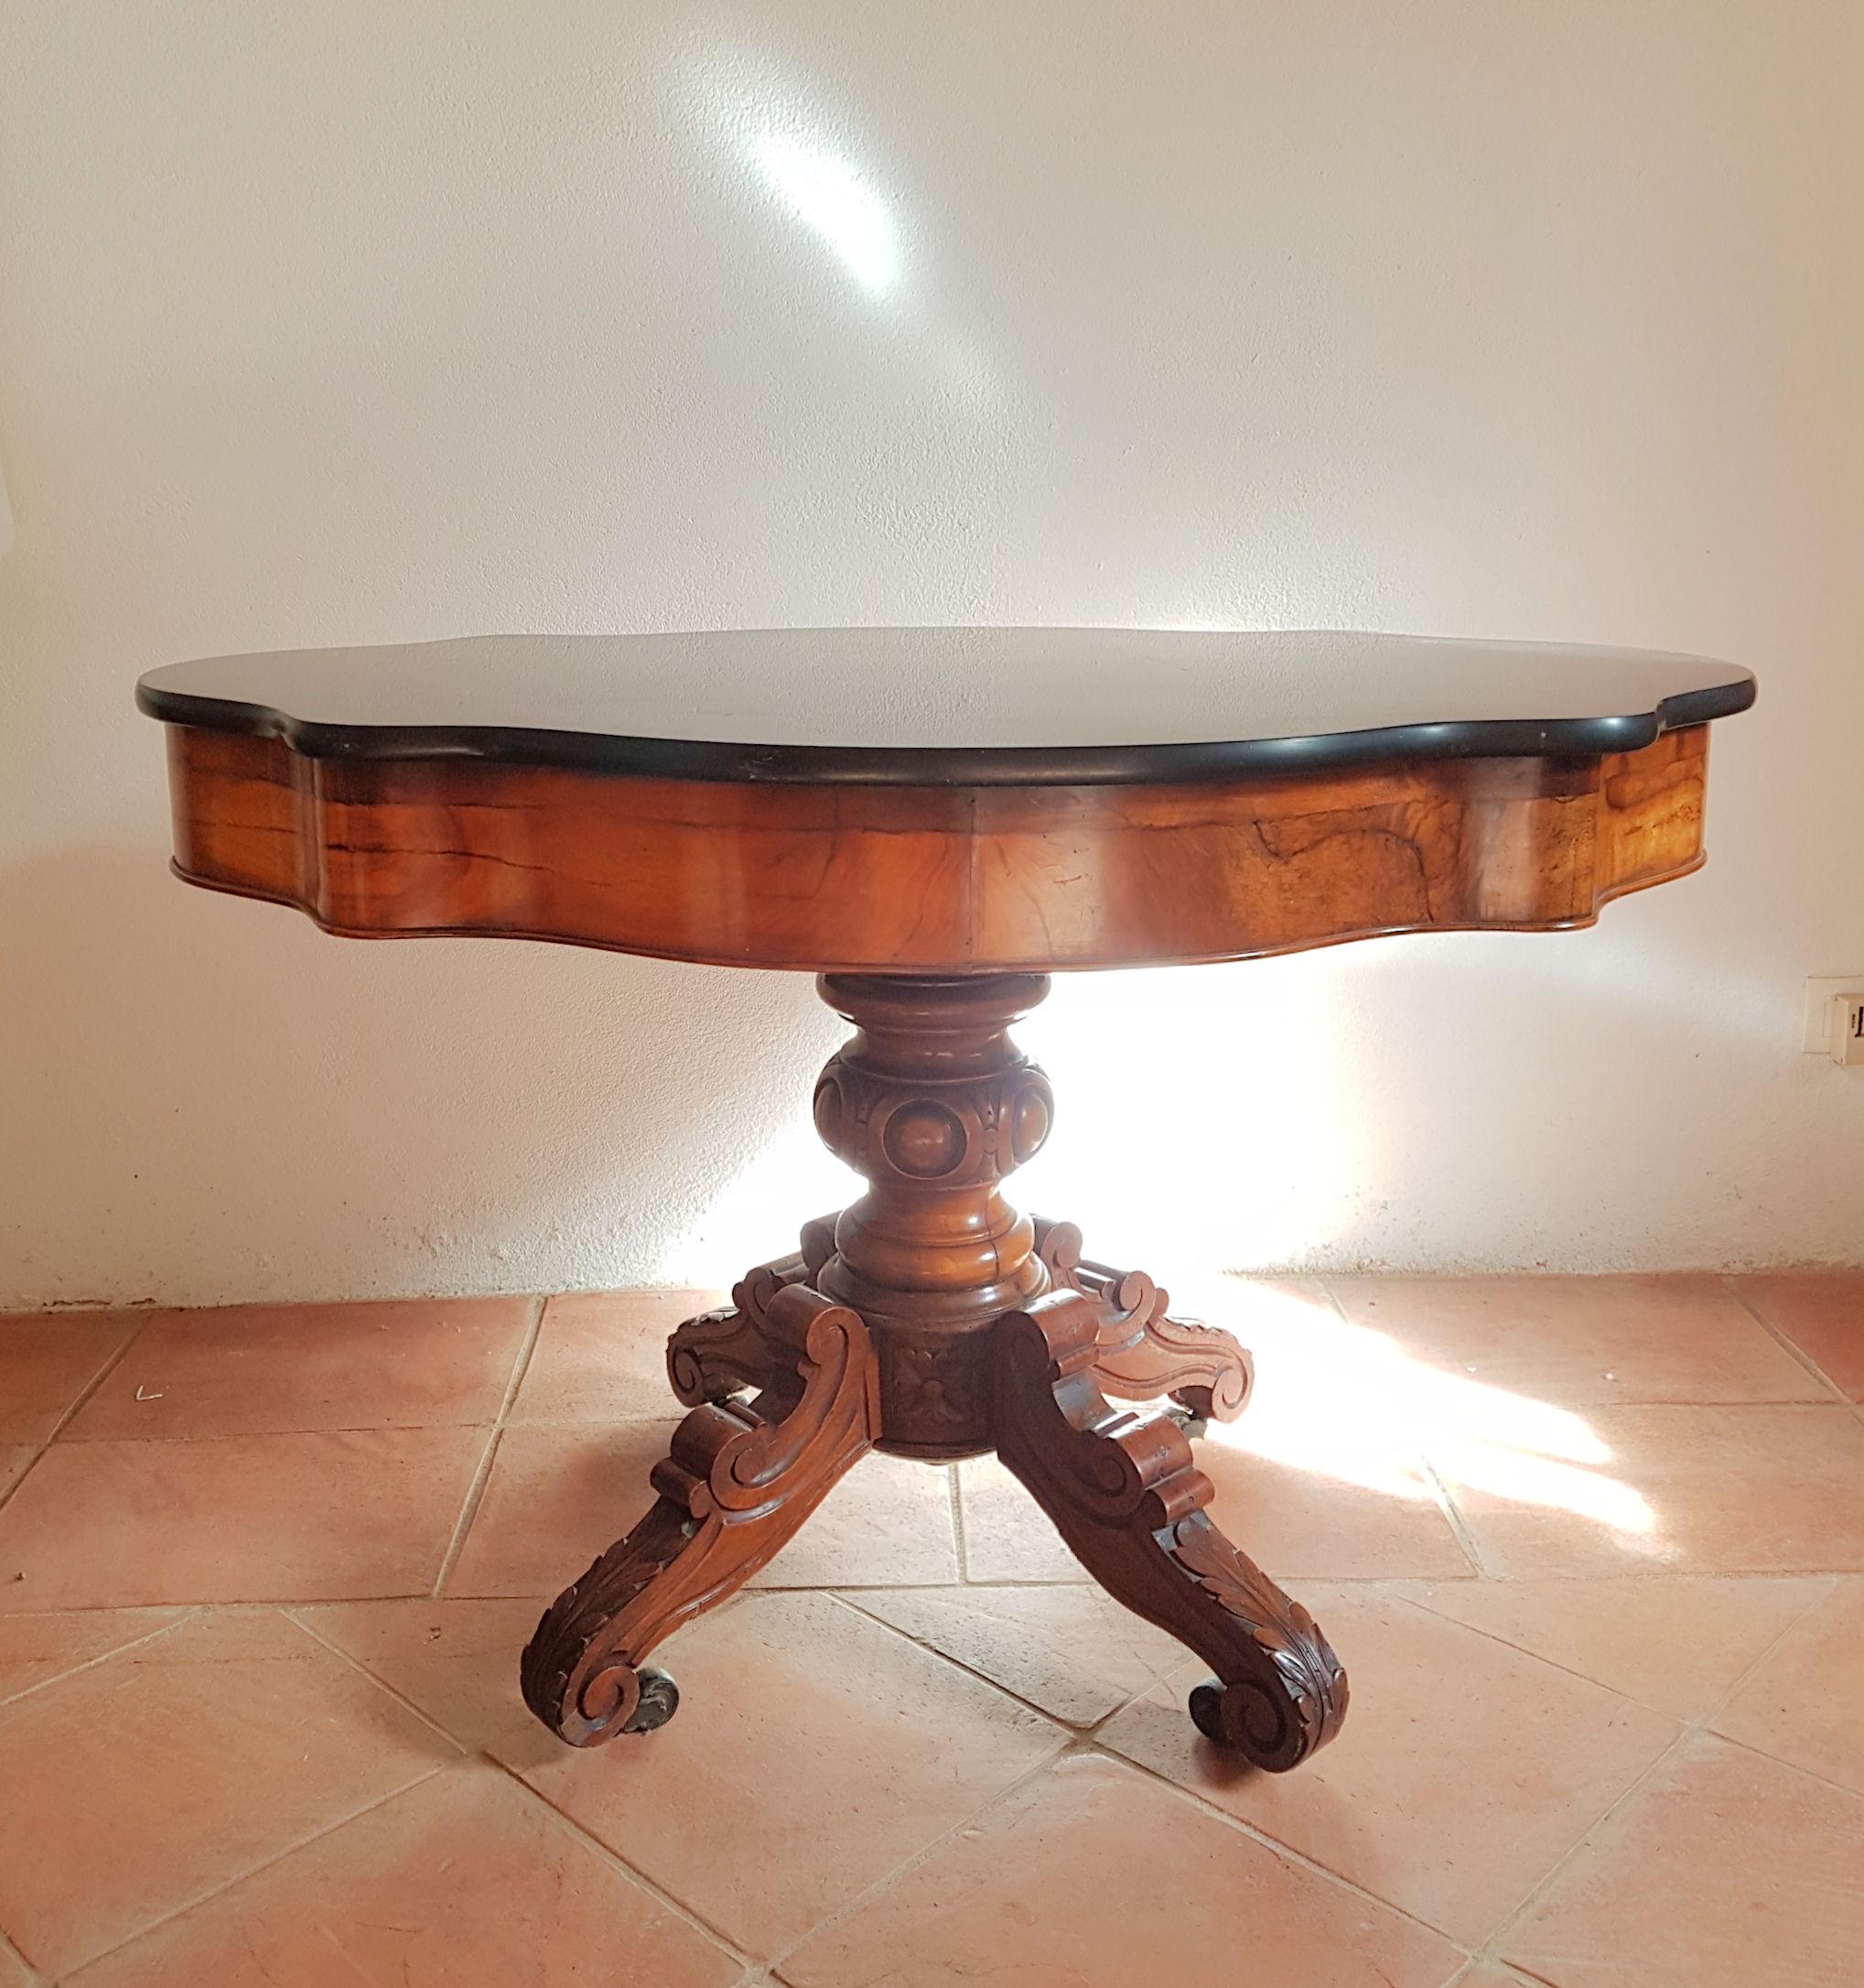 Französischer Tisch aus dem 19. Jahrhundert, aus Nussbaumholz und schwarzer Marmorplatte, 
mit geschnitzter Balustersäule und geschwungenen Beinen mit Topfradeln.
Schöne Qualität und Zustand für diese Französisch antiken Tisch.